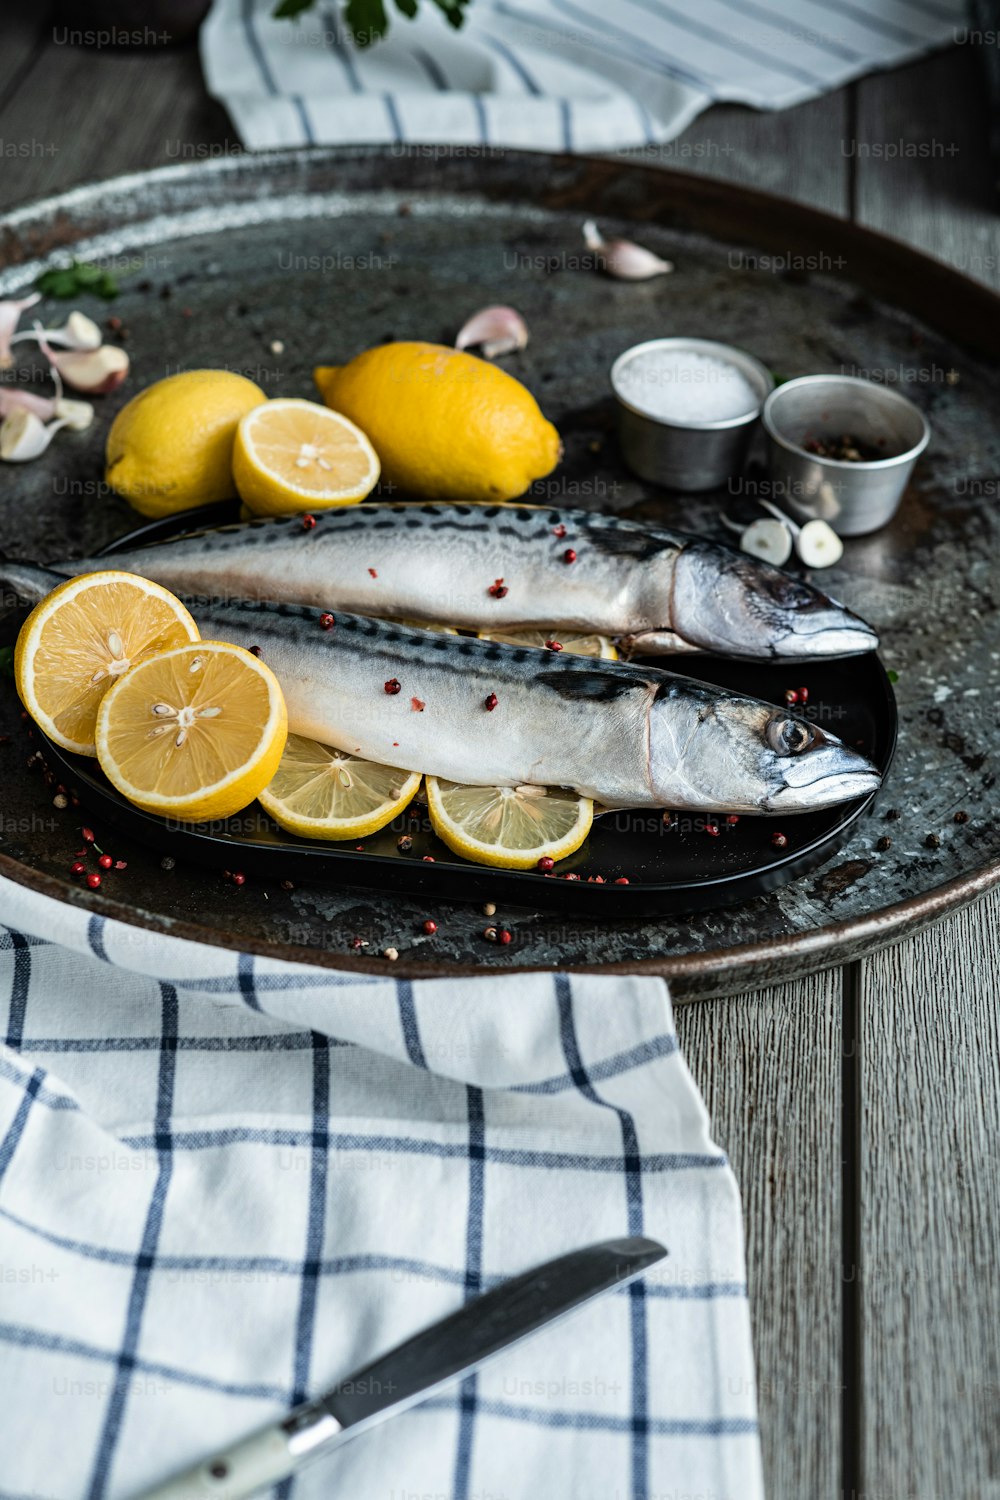 Un plato de pescado y limones sobre una mesa